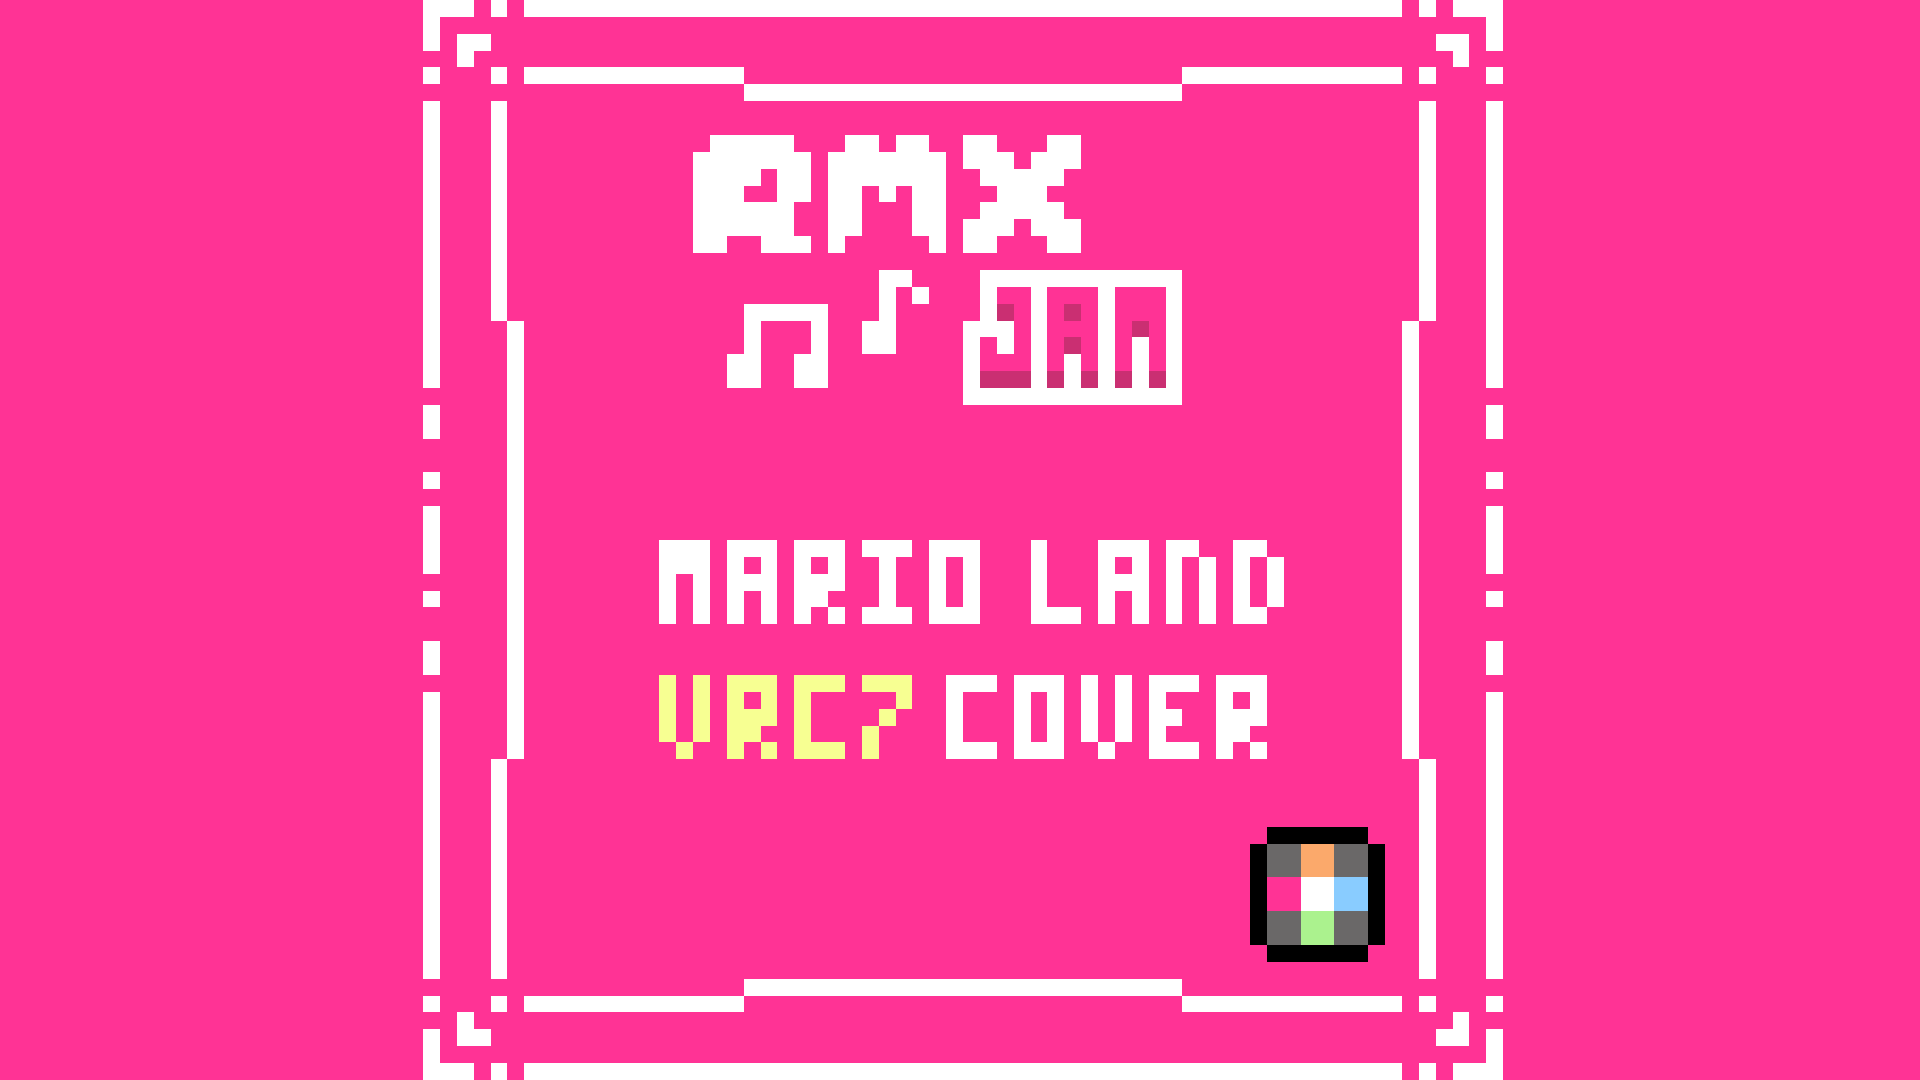 Mario Land VRC7 Cover